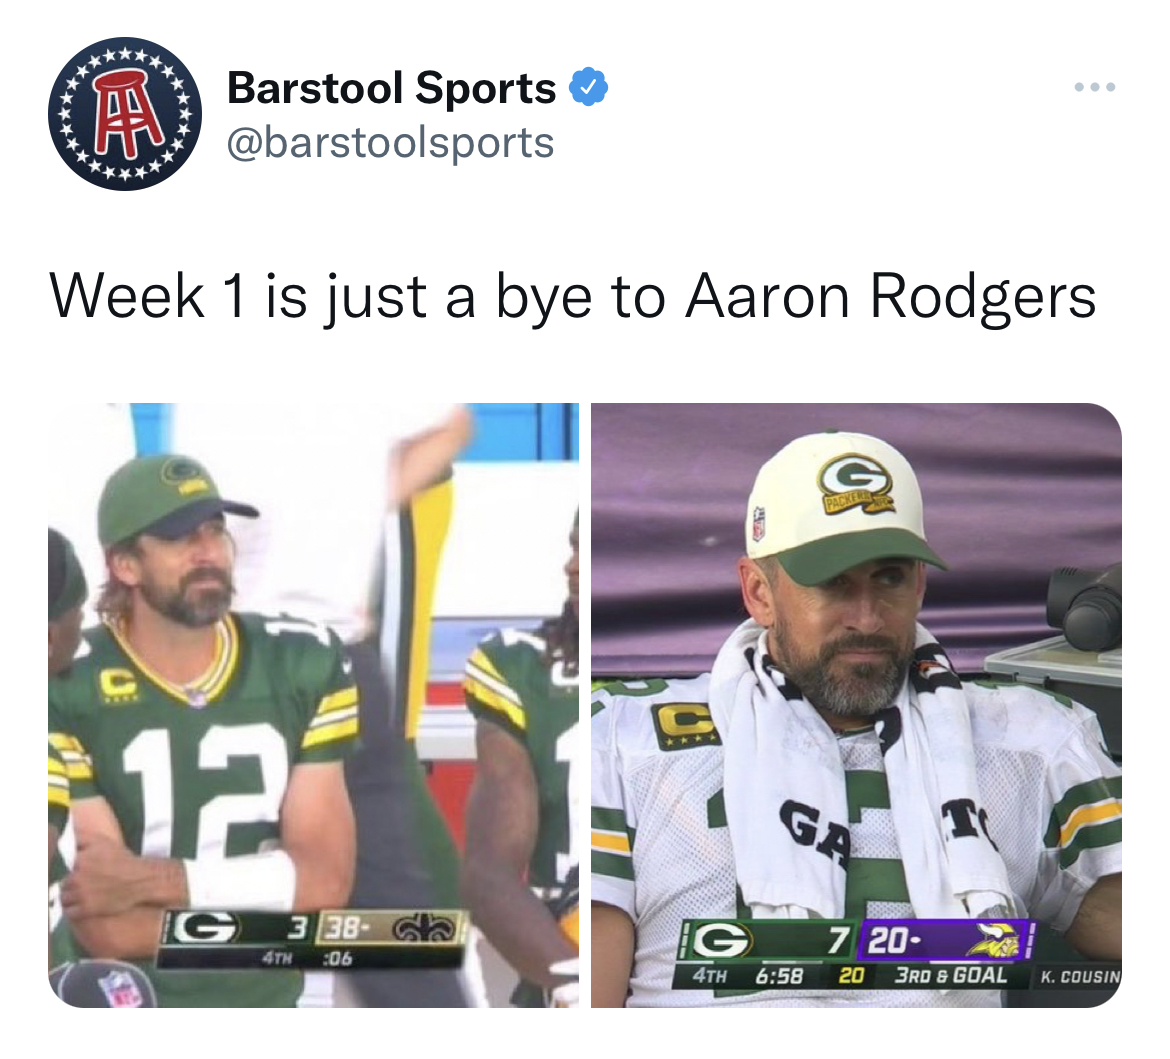 NFL memes week 1 2022 - security - Barstool Sports > Week 1 is just a bye to Aaron Rodgers Bil 12 G3 38 4TH 06 G 4TH O Ga 7 20 20 3RD & Goal K. Cousin